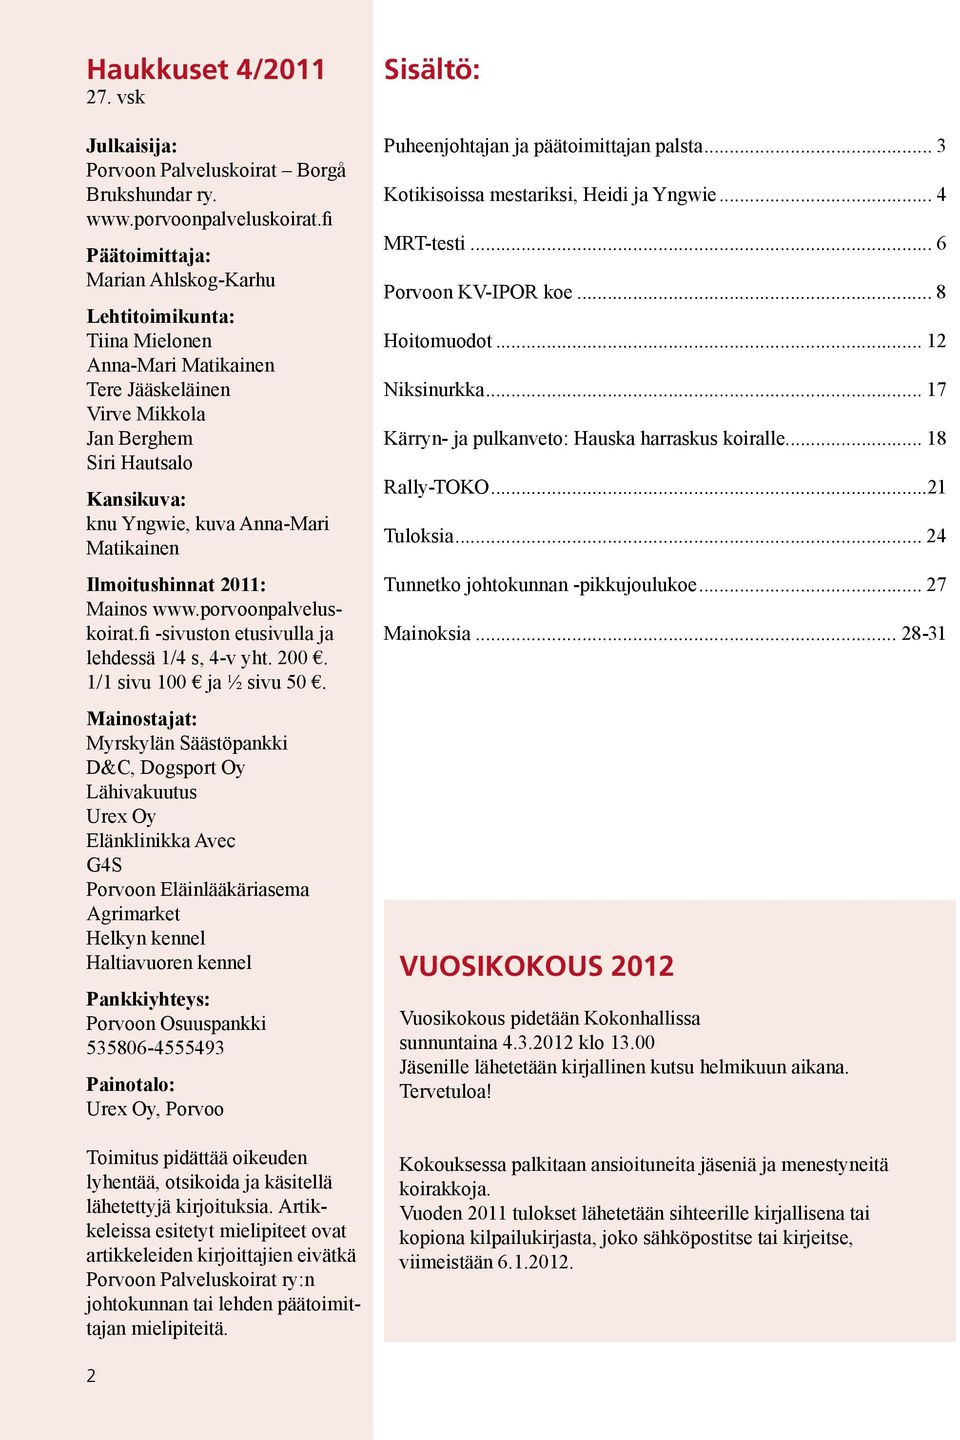 Ilmoitushinnat 2011: Mainos www.porvoonpalveluskoirat.fi -sivuston etusivulla ja lehdessä 1/4 s, 4-v yht. 200. 1/1 sivu 100 ja ½ sivu 50.